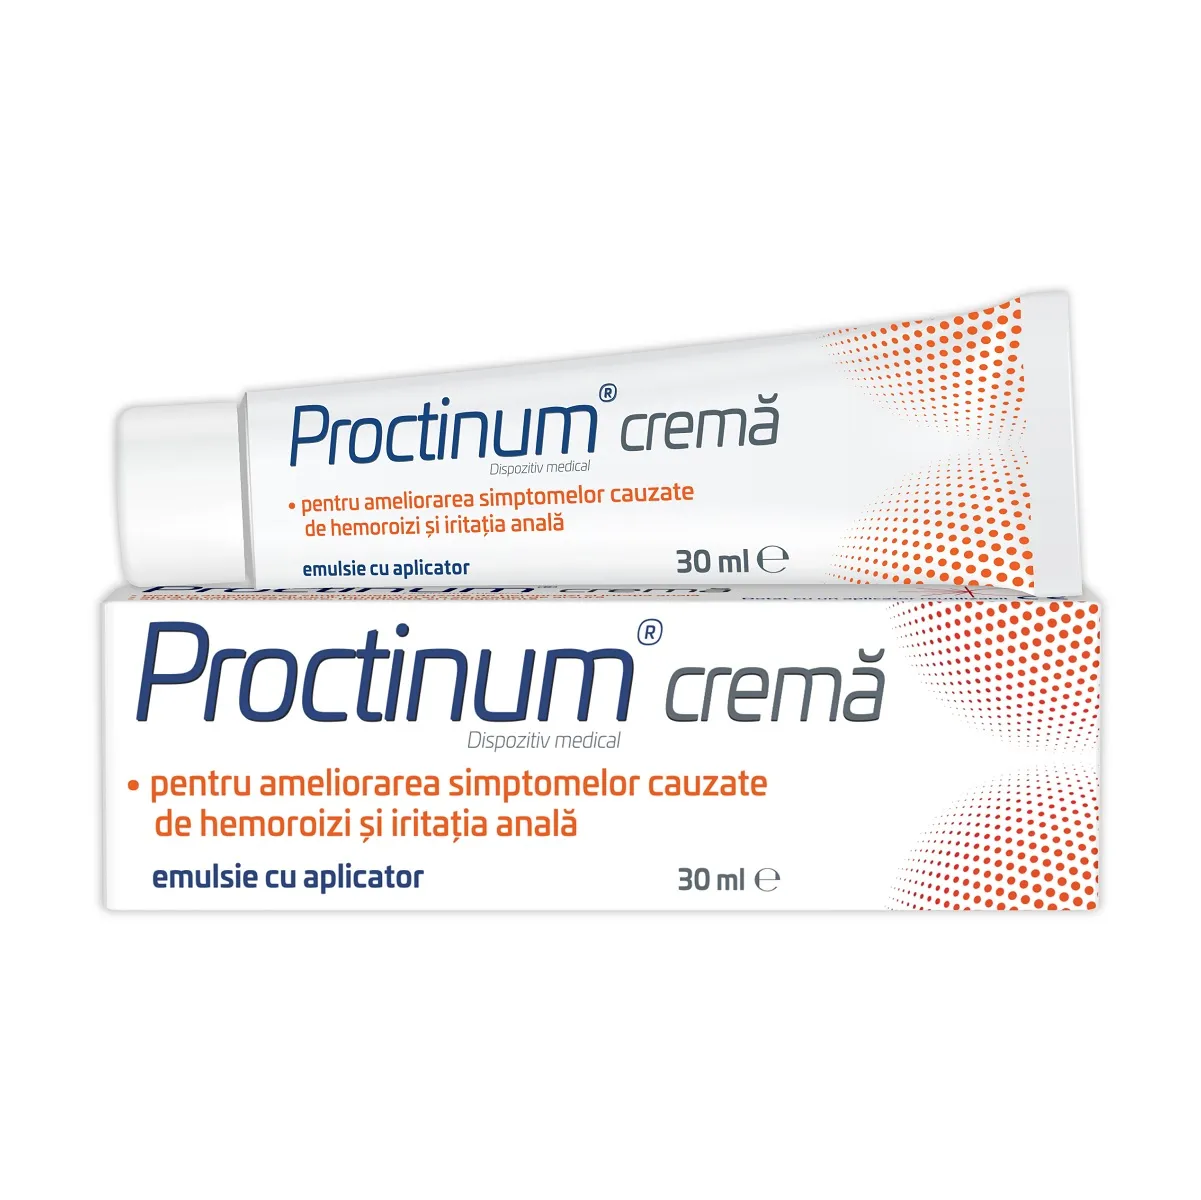 Proctinum crema, 30ml, Zdrovit